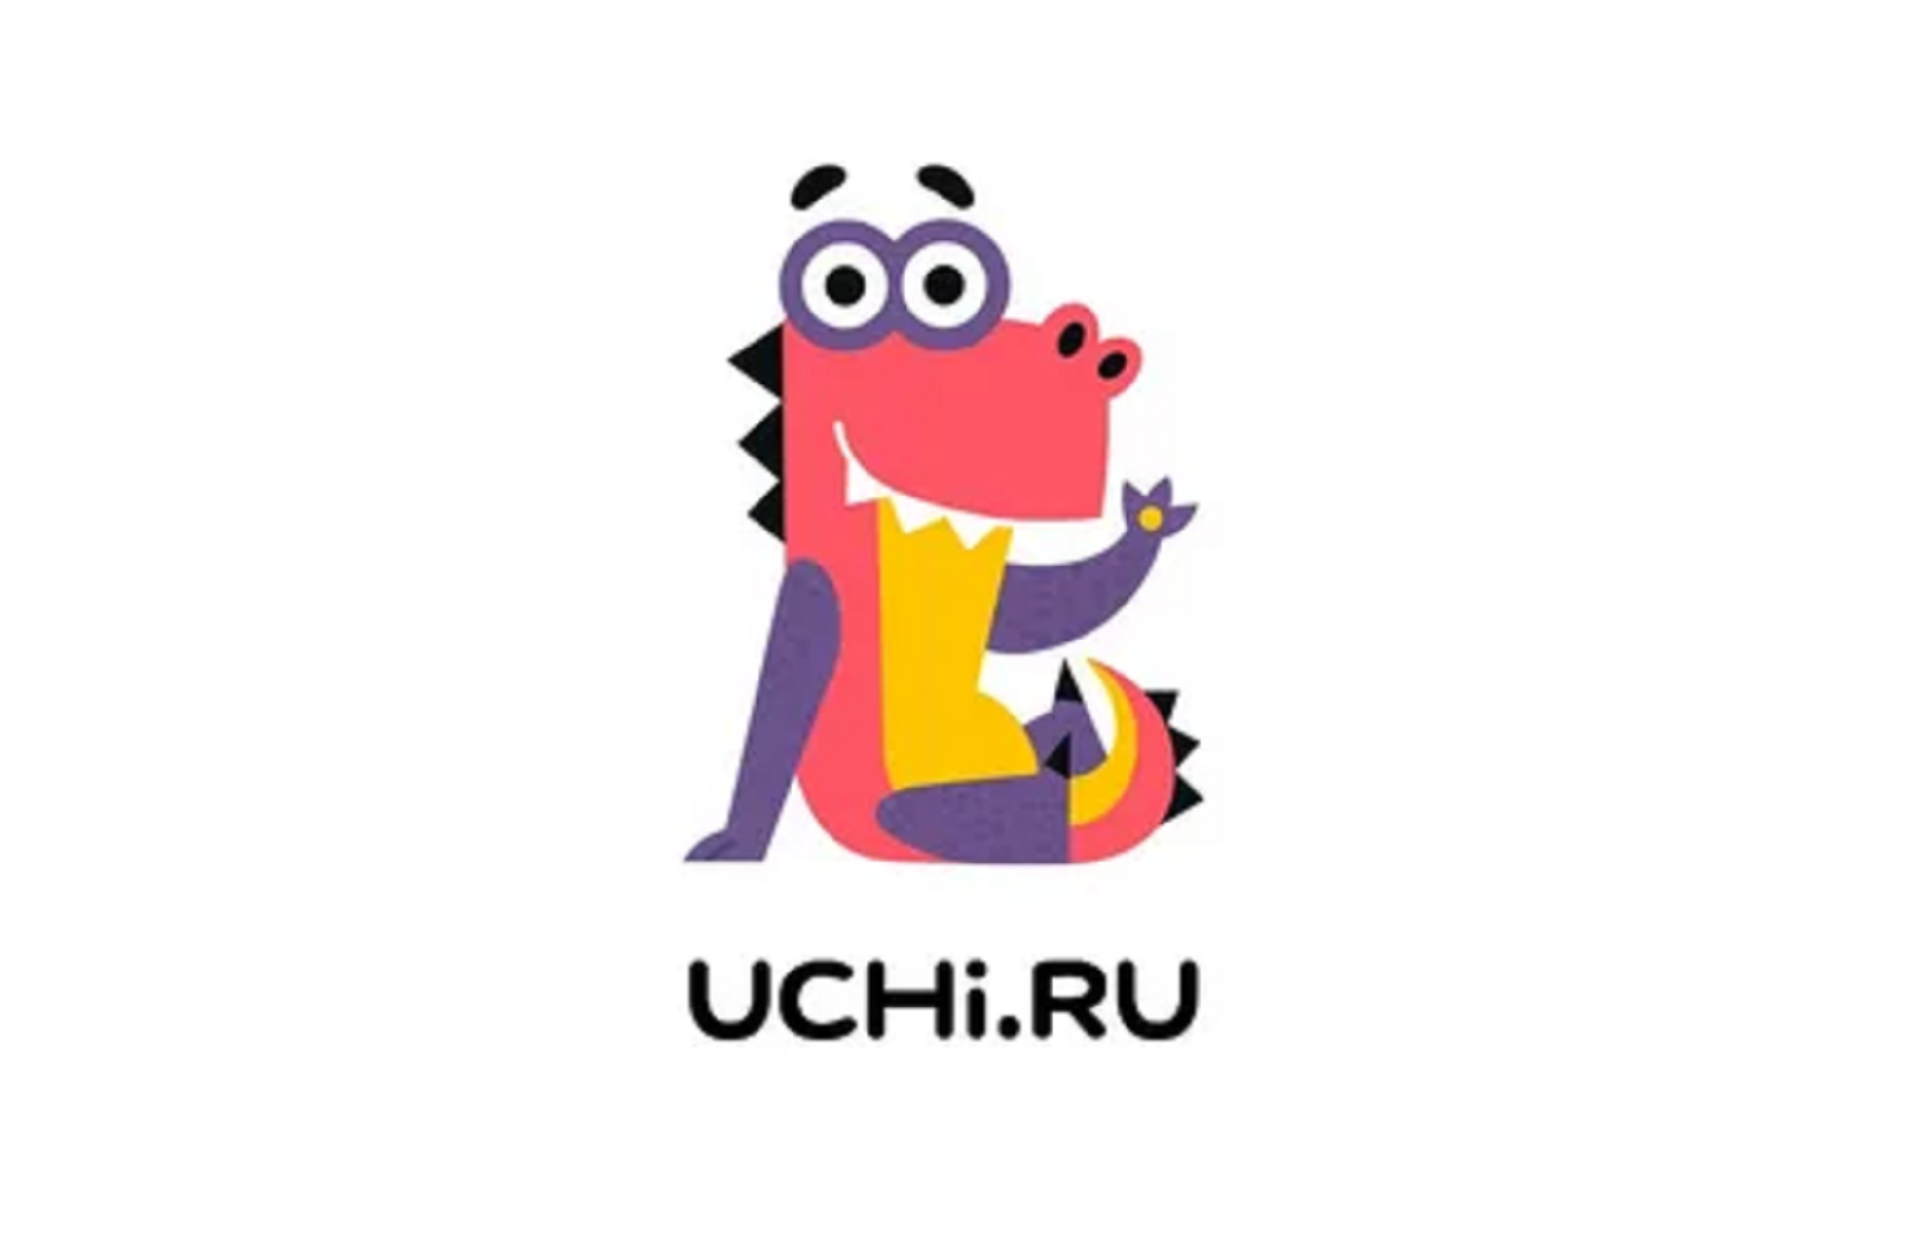 Учи ру uchi ru в яндексе. Учи ру. Учи ру логотип. Сфучи ру. Заврики.